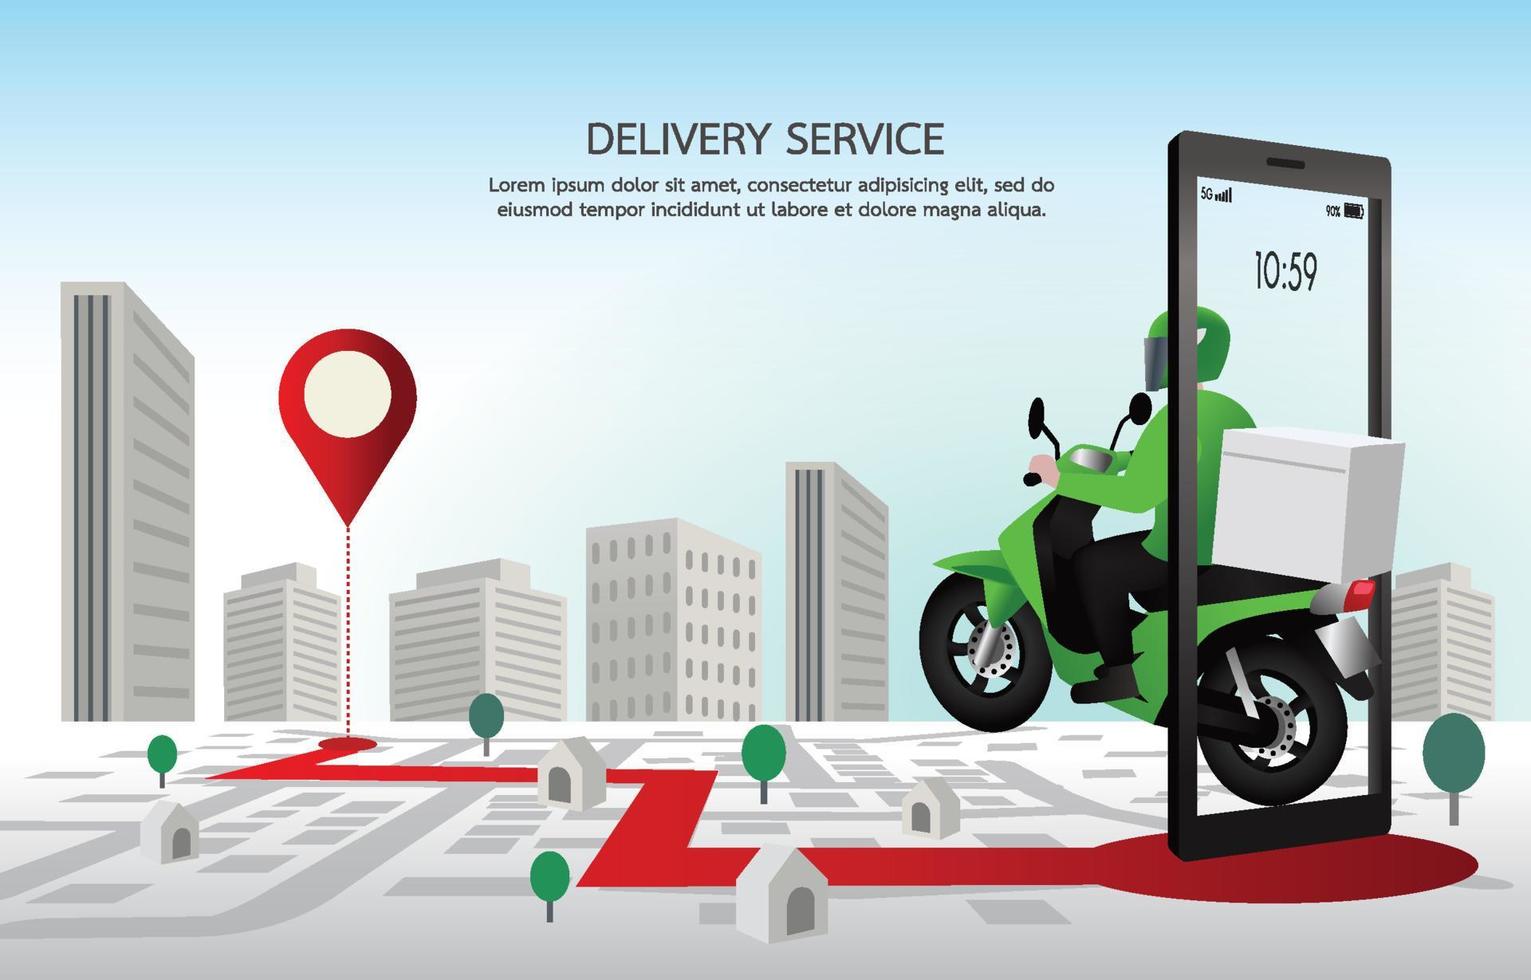 snelle bezorger met motorfietsen. klanten bestellen op mobiele applicatie, de motorrijder gaat volgens de gps-kaart, de achtergrond is een stadsbeeld. illustratie vector ontwerp voor banner, web